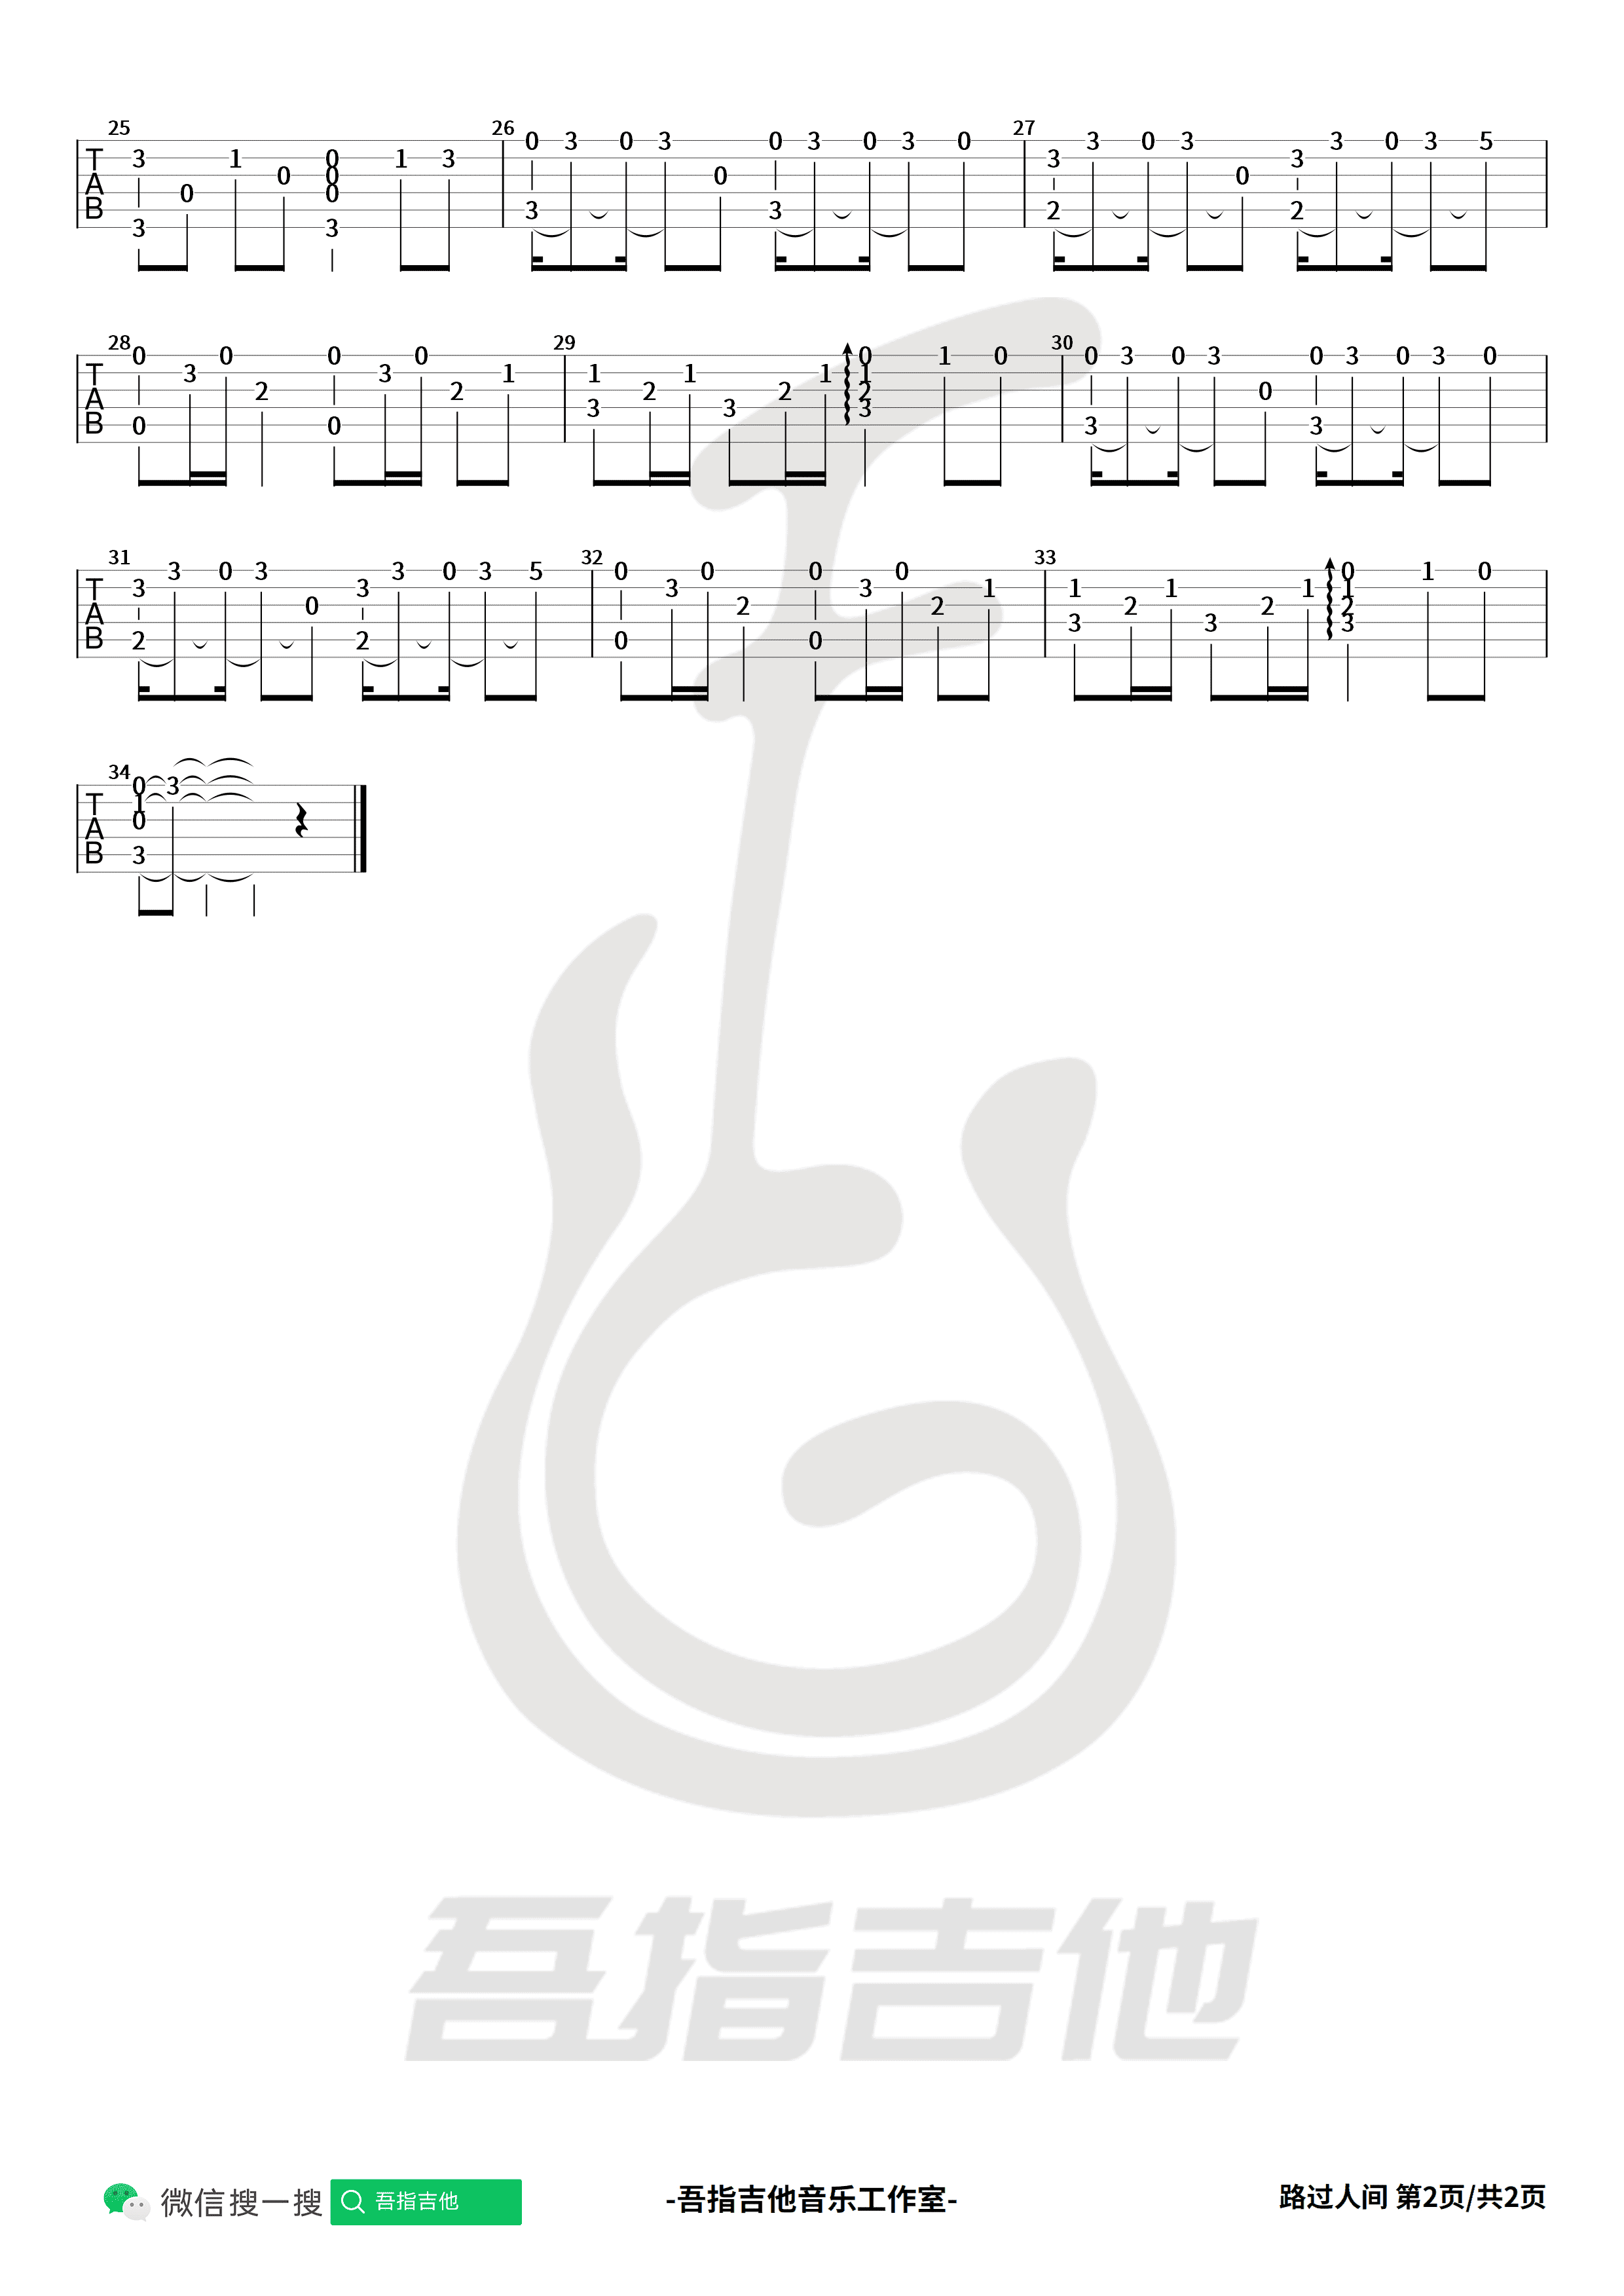 李荣浩 - 不说 (从你的全世界路过) [弹唱] 吉他谱